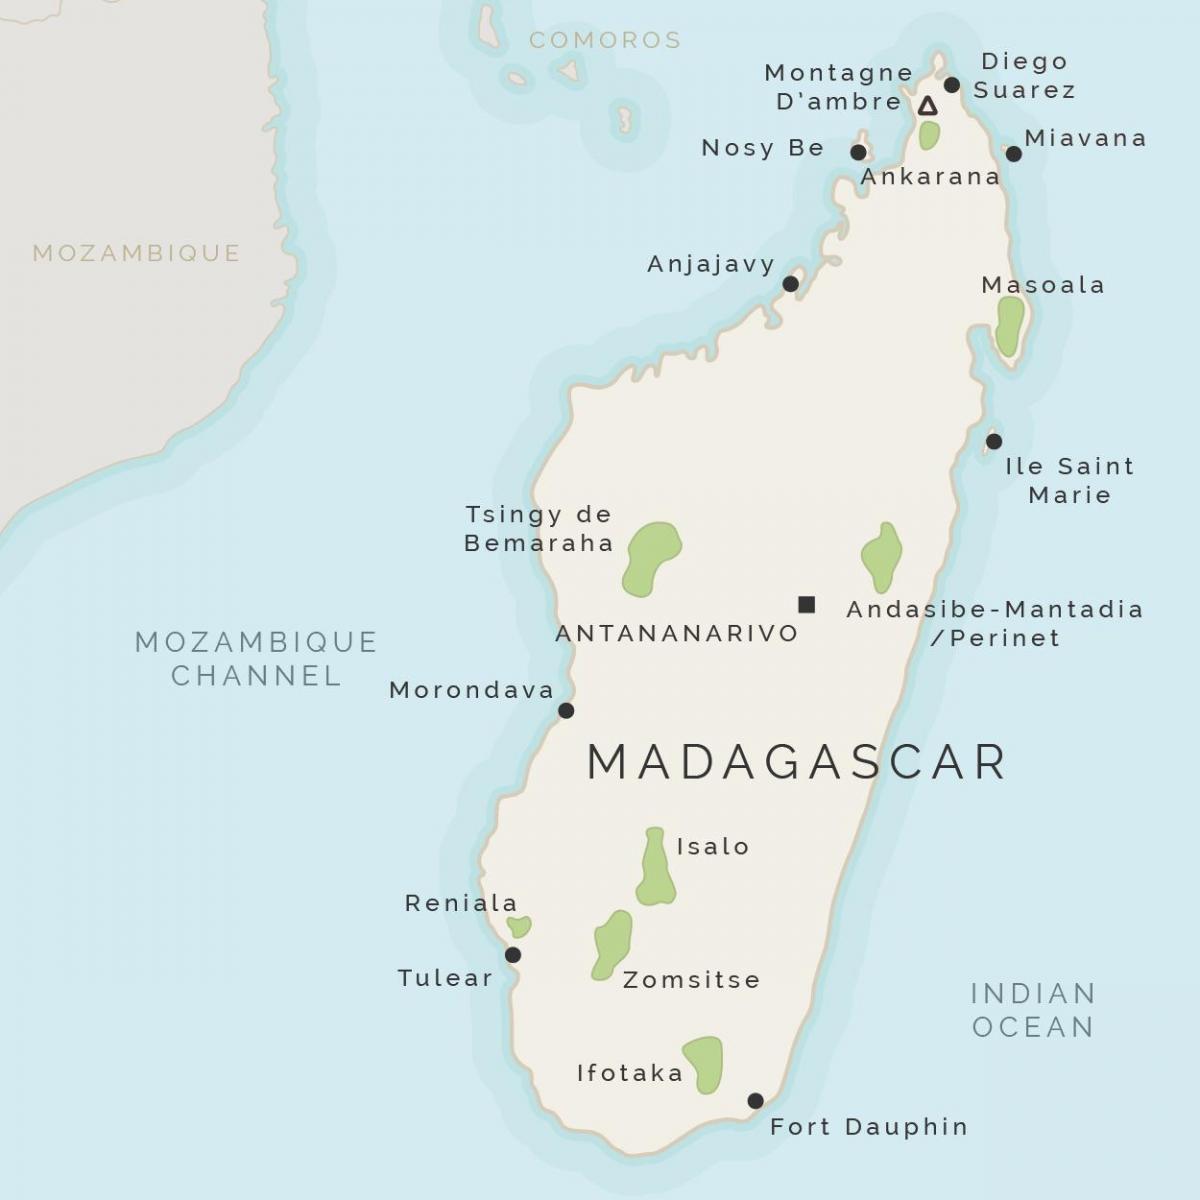 zemljevid Madagaskar in okoliške otoke